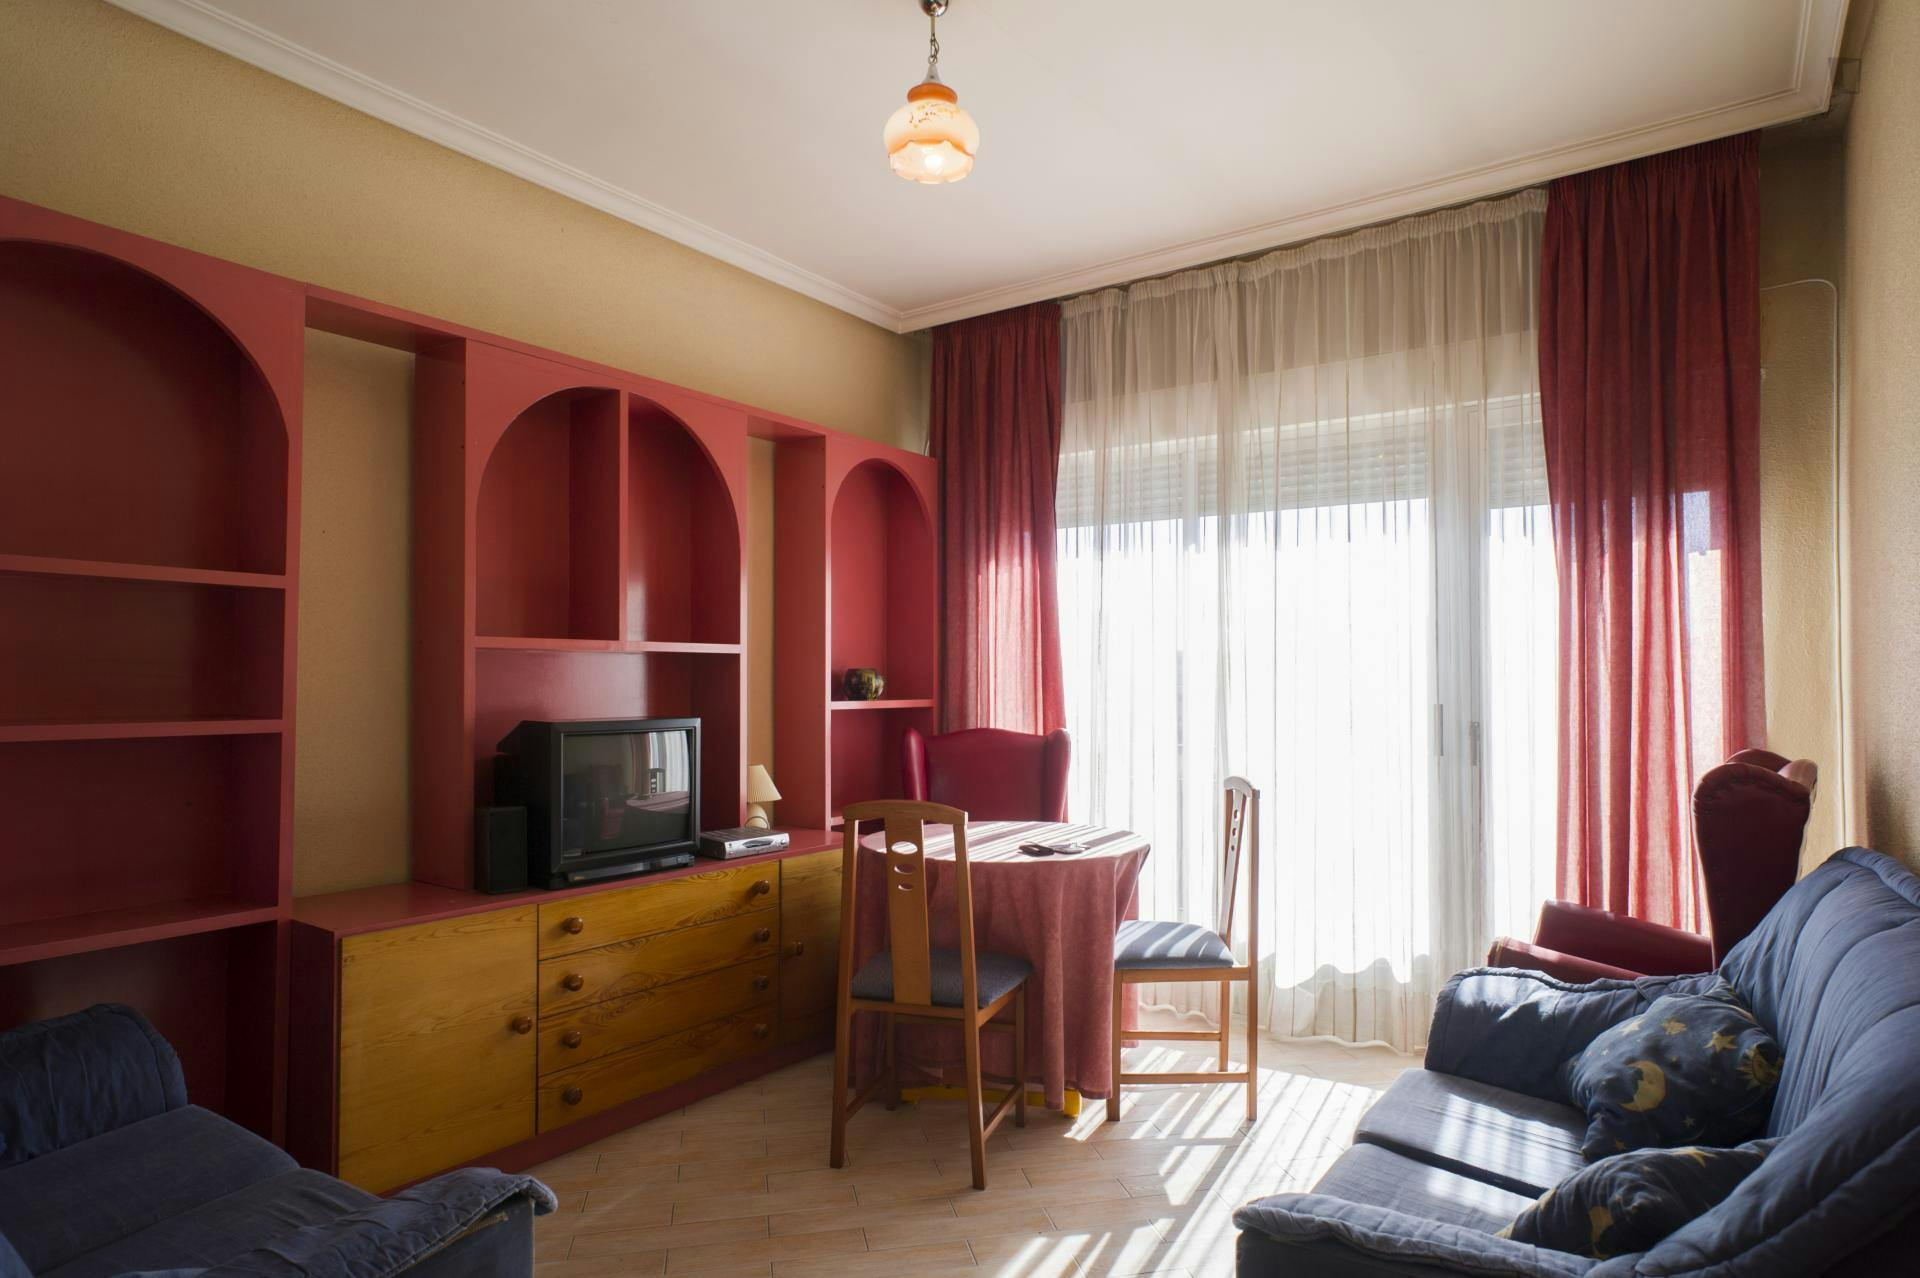 Typical and cosy 3-bedroom apartment near Parque de las Salesas